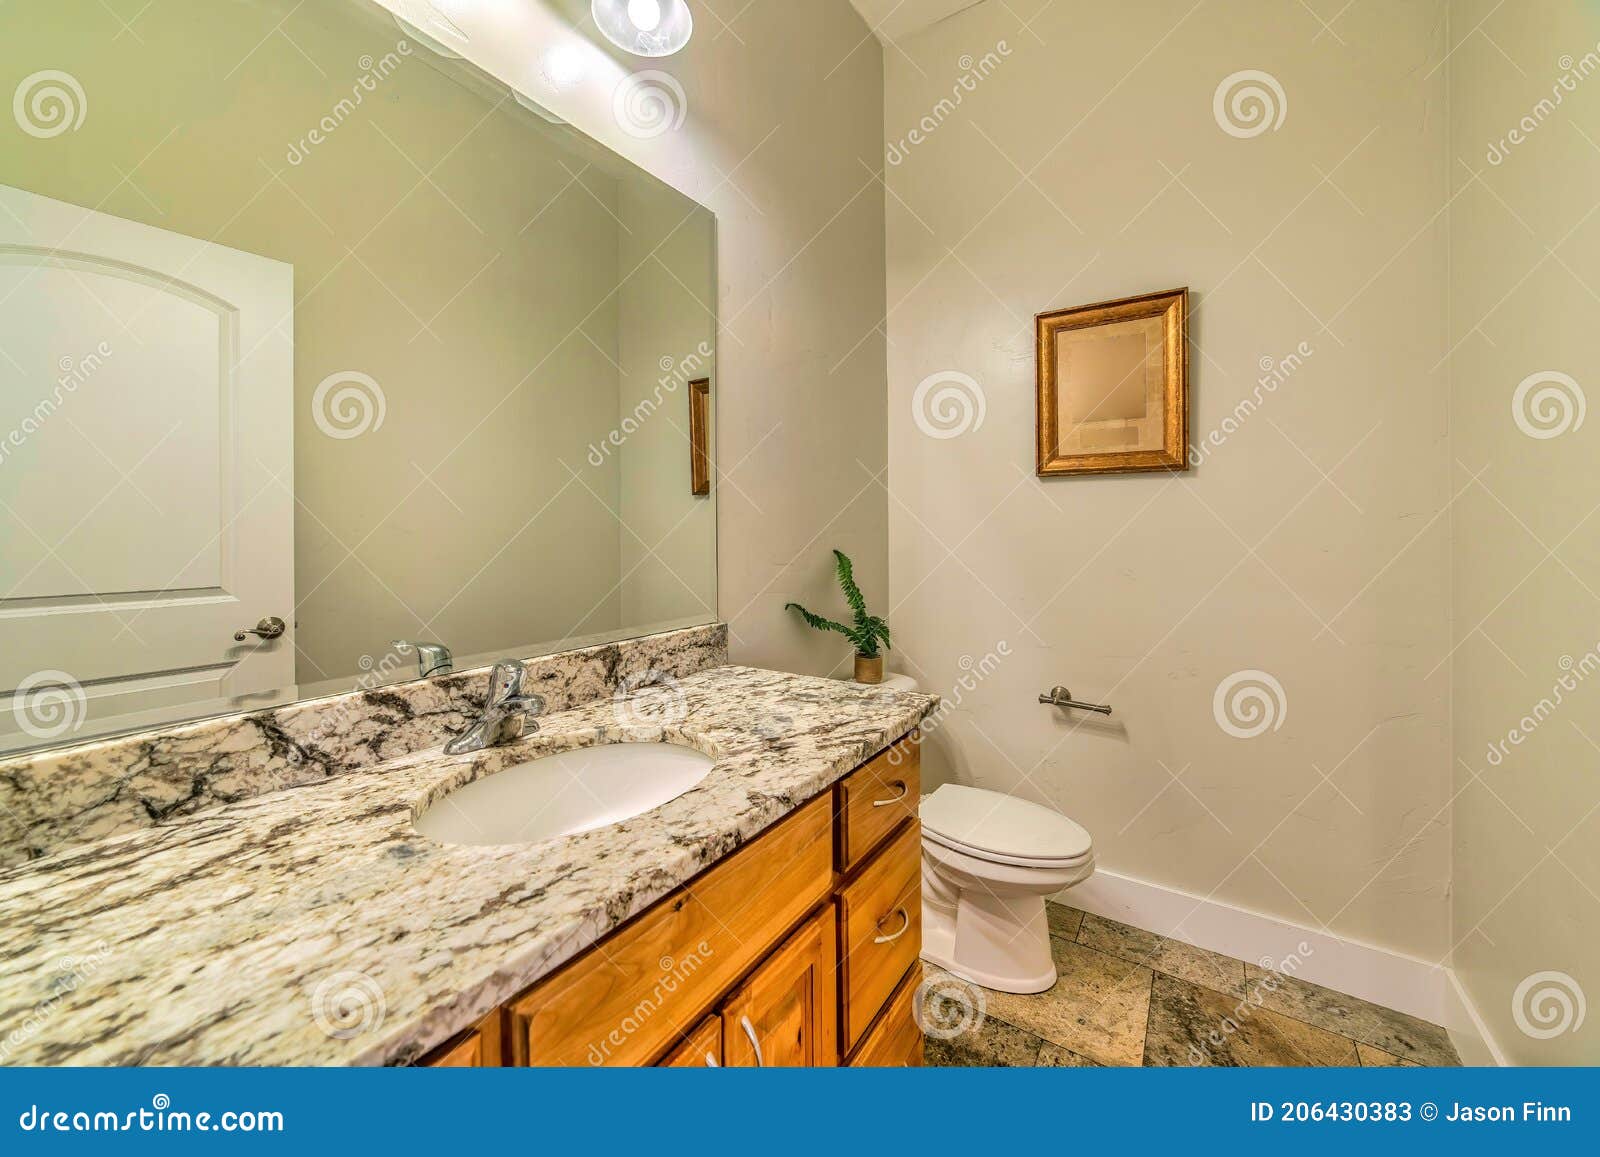 https://thumbs.dreamstime.com/z/hauptbadezimmer-mit-toilette-neben-marmorcountertop-ablagen-und-ovaler-waschbecken-riesige-spiegel-formuliert-h%C3%A4tte-dekoration-206430383.jpg